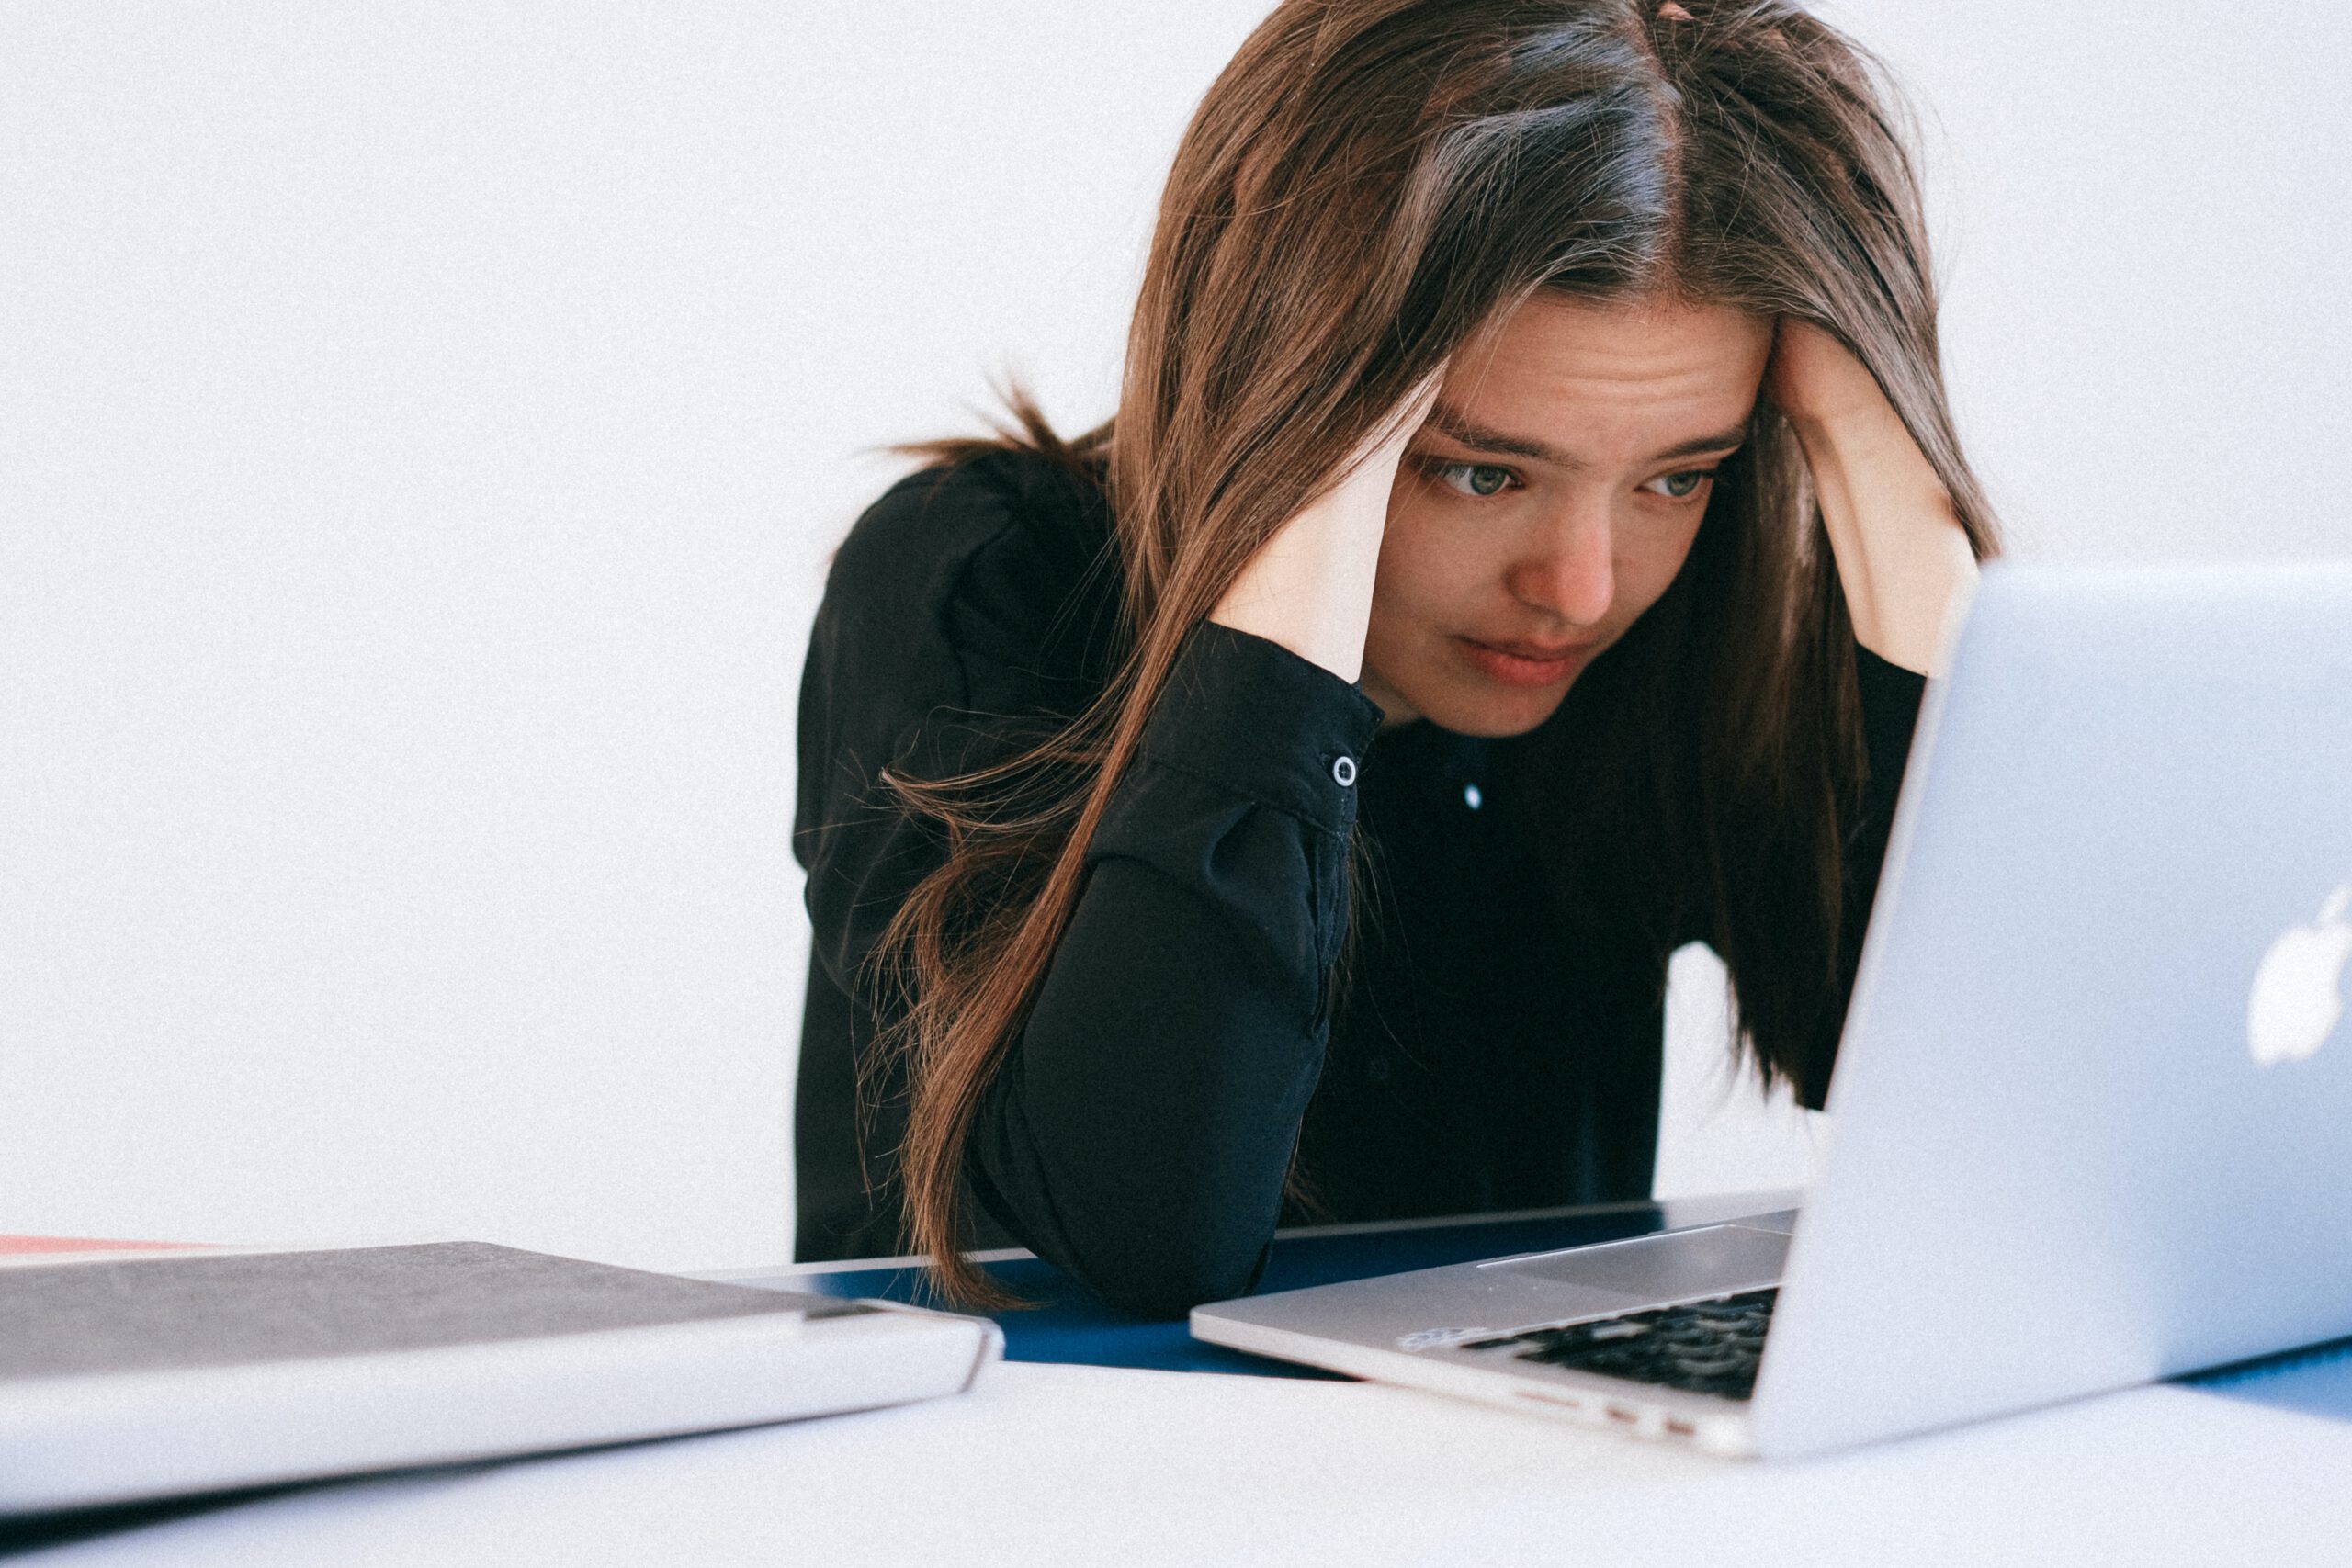 Załamana młoda kobieta na bezrobociu siedząca przed komputerem i szukająca pracy